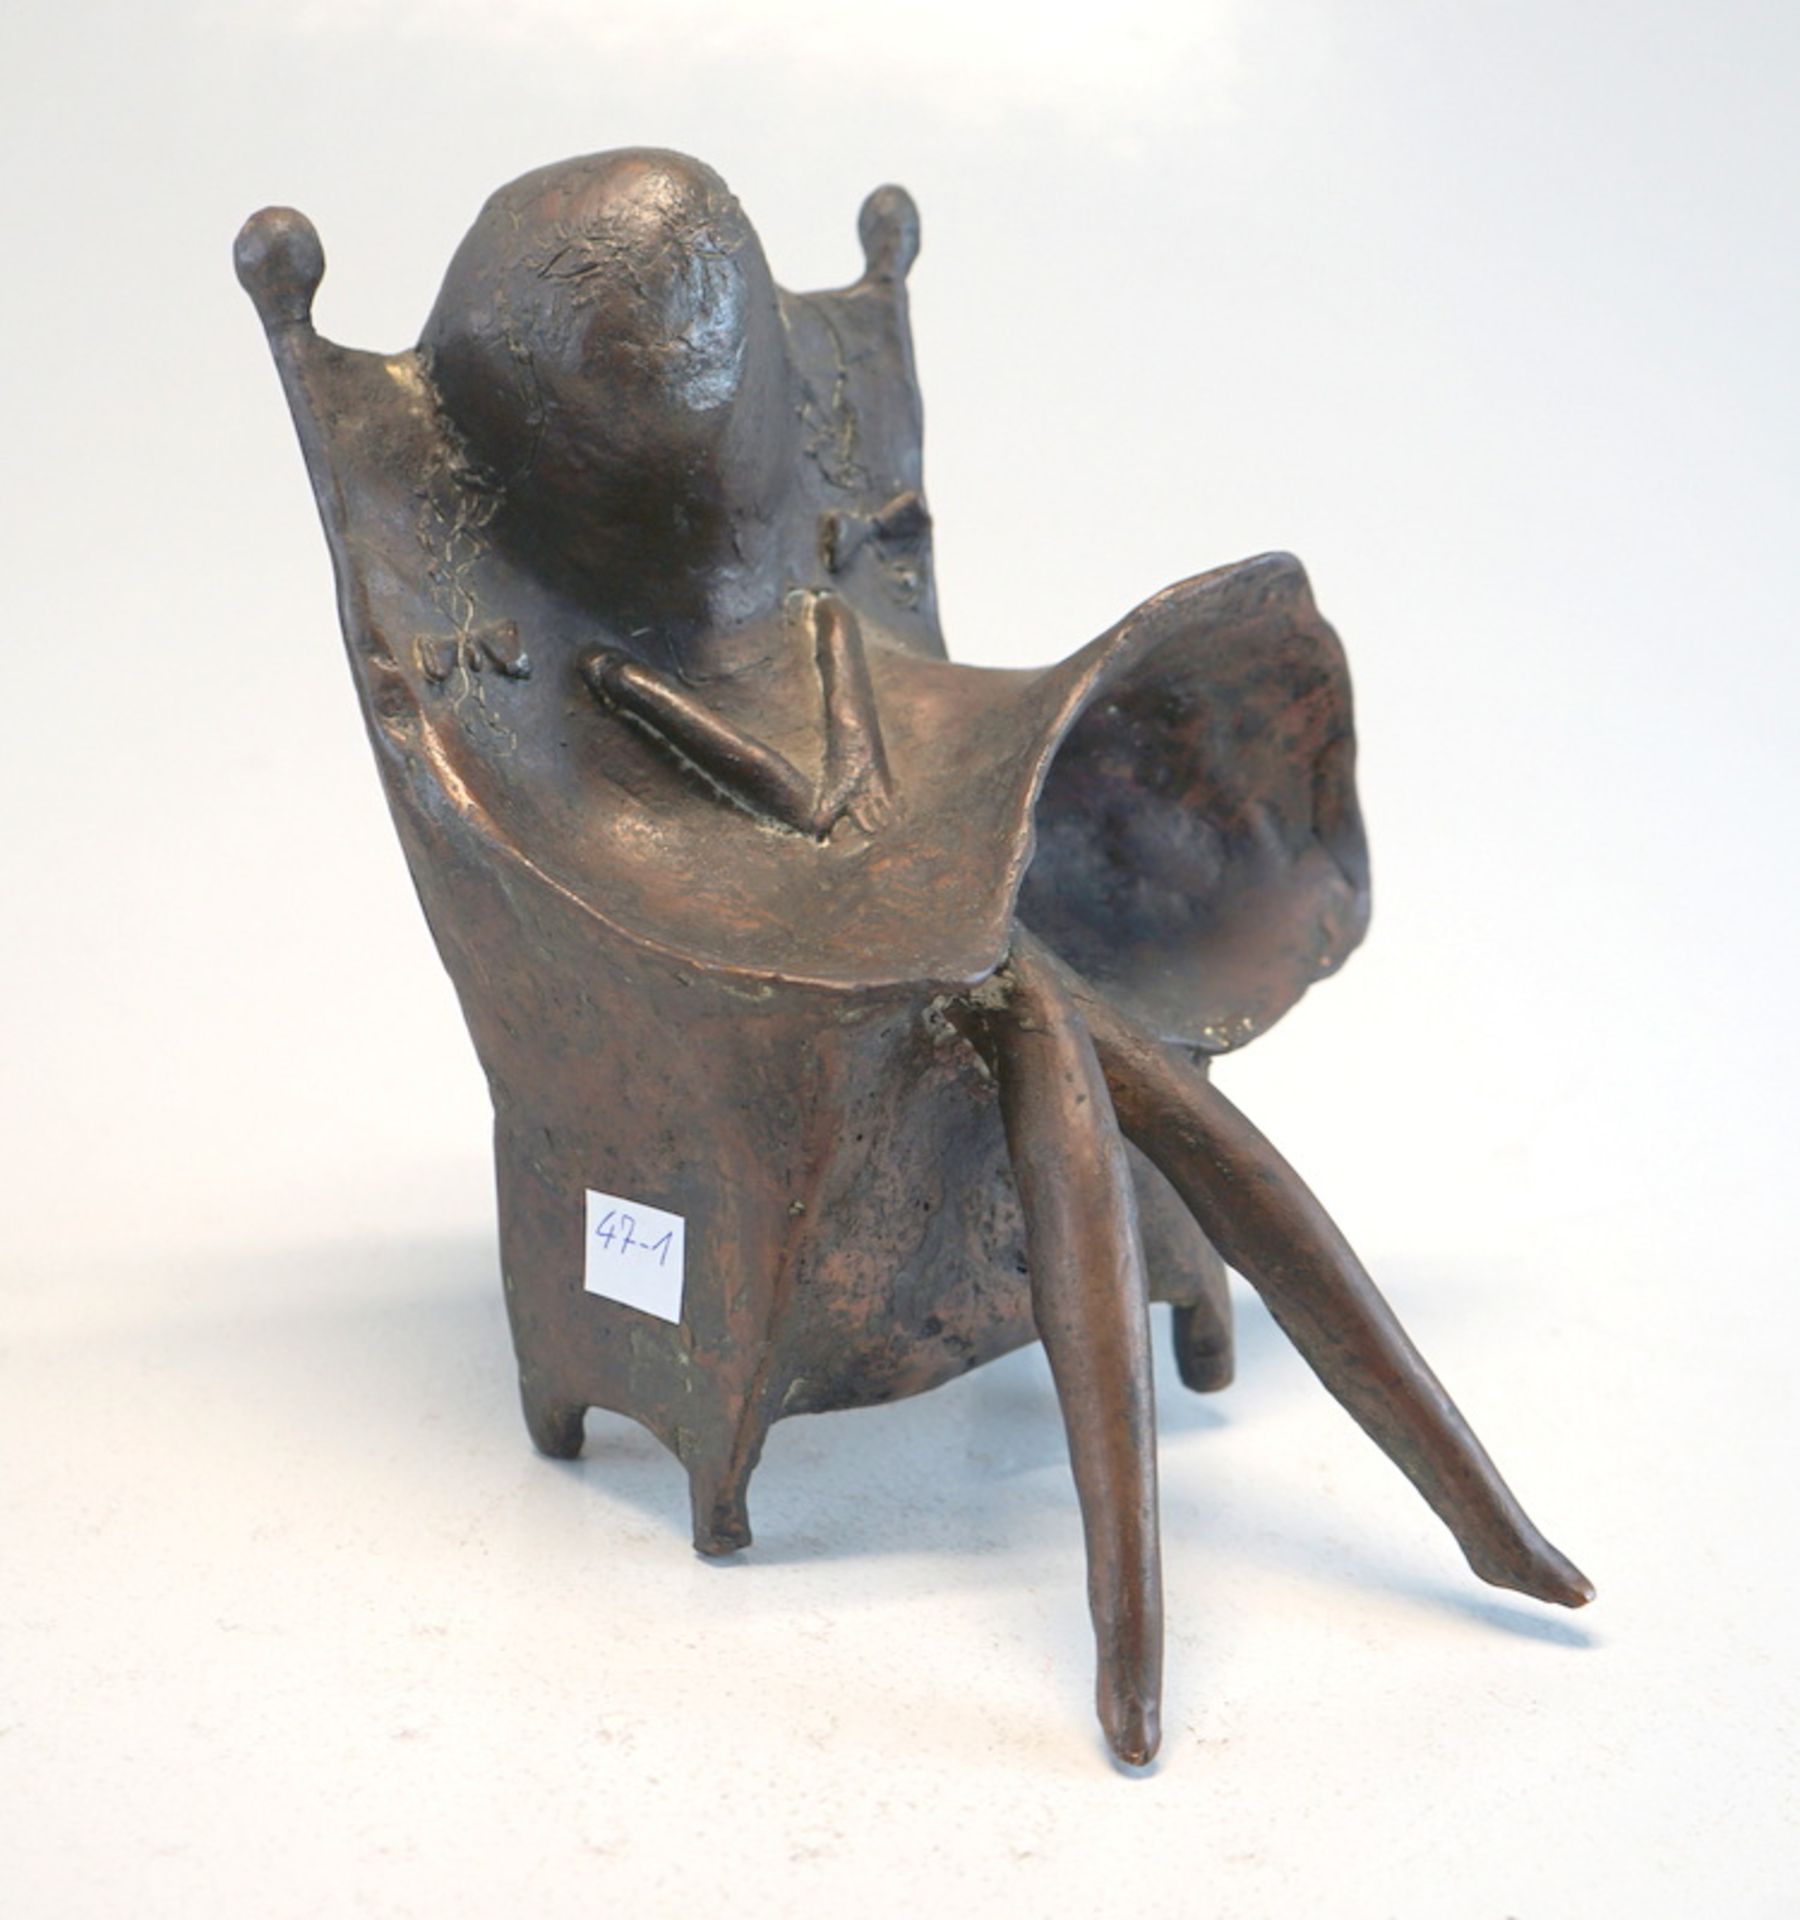 Fischer, Lothar: "Sitzende Puppe", Bronzefigur